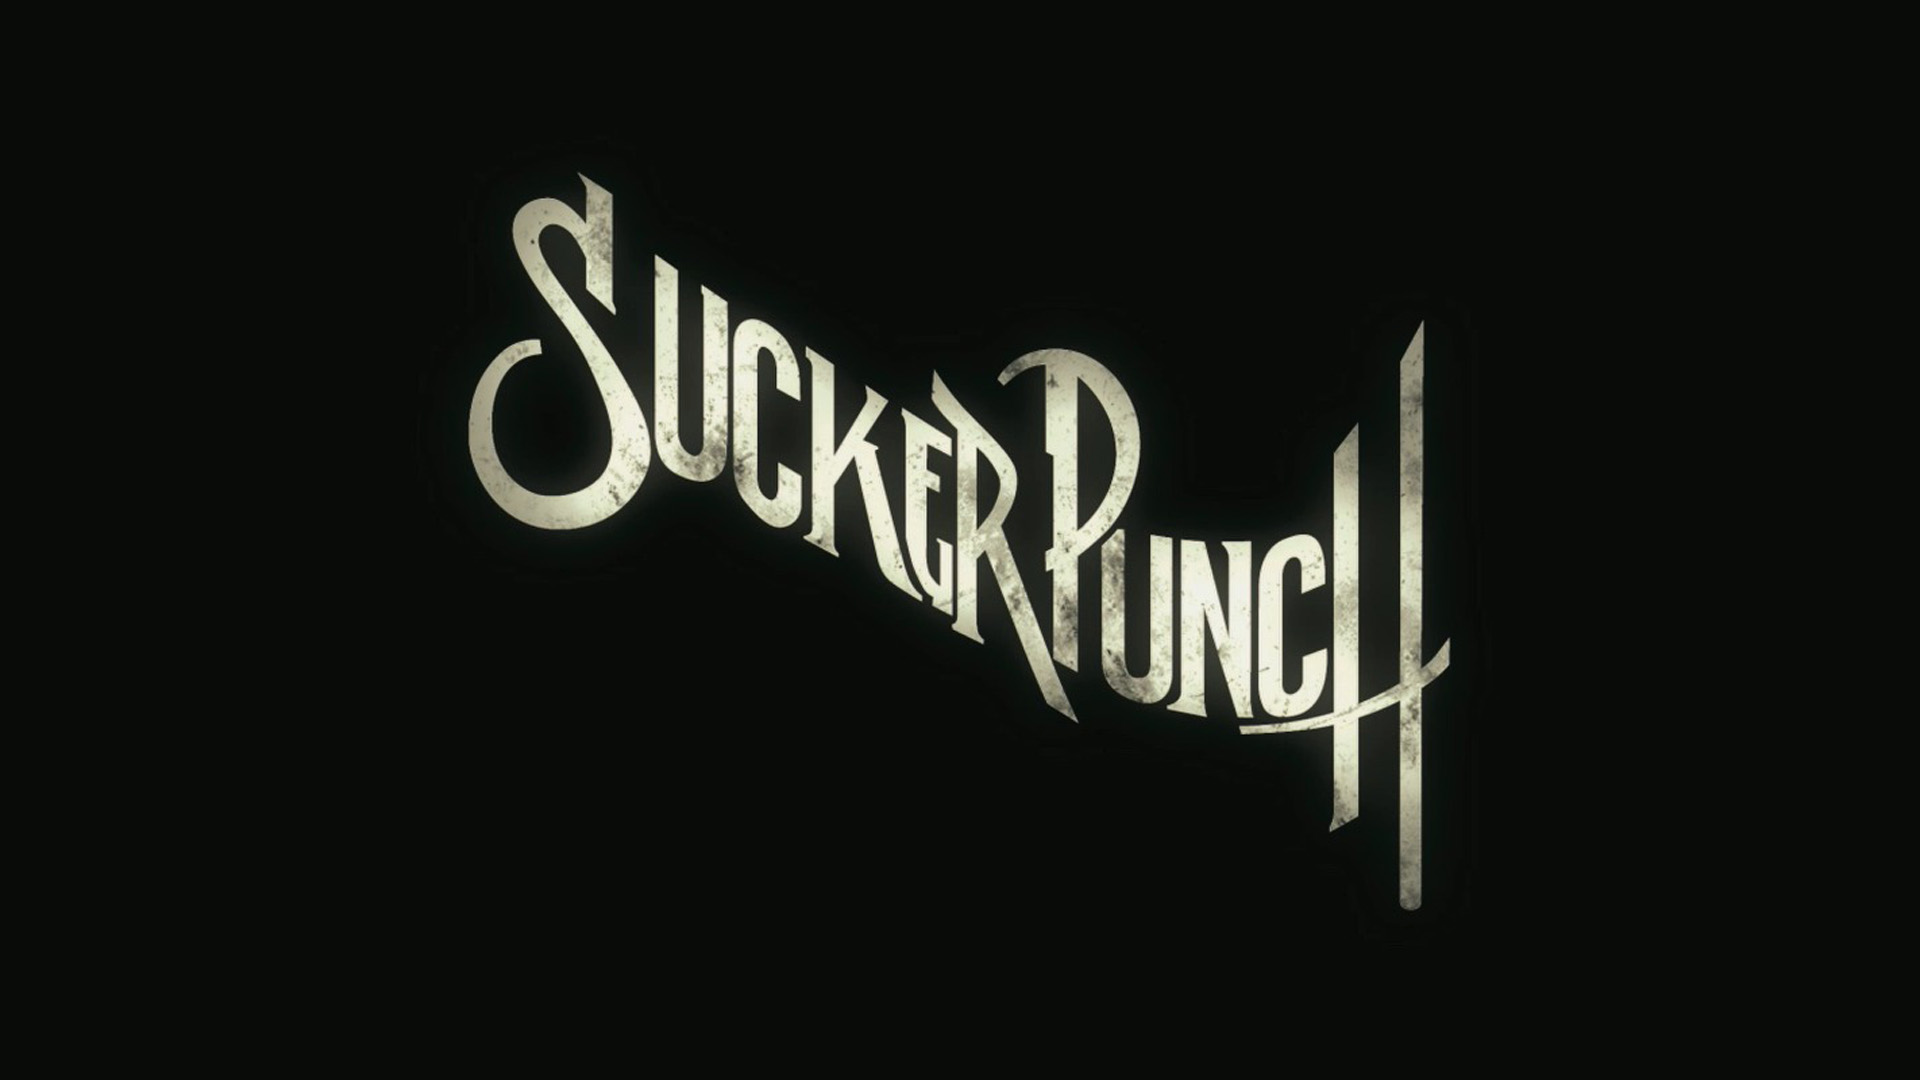 Background Sucker Punch Movie